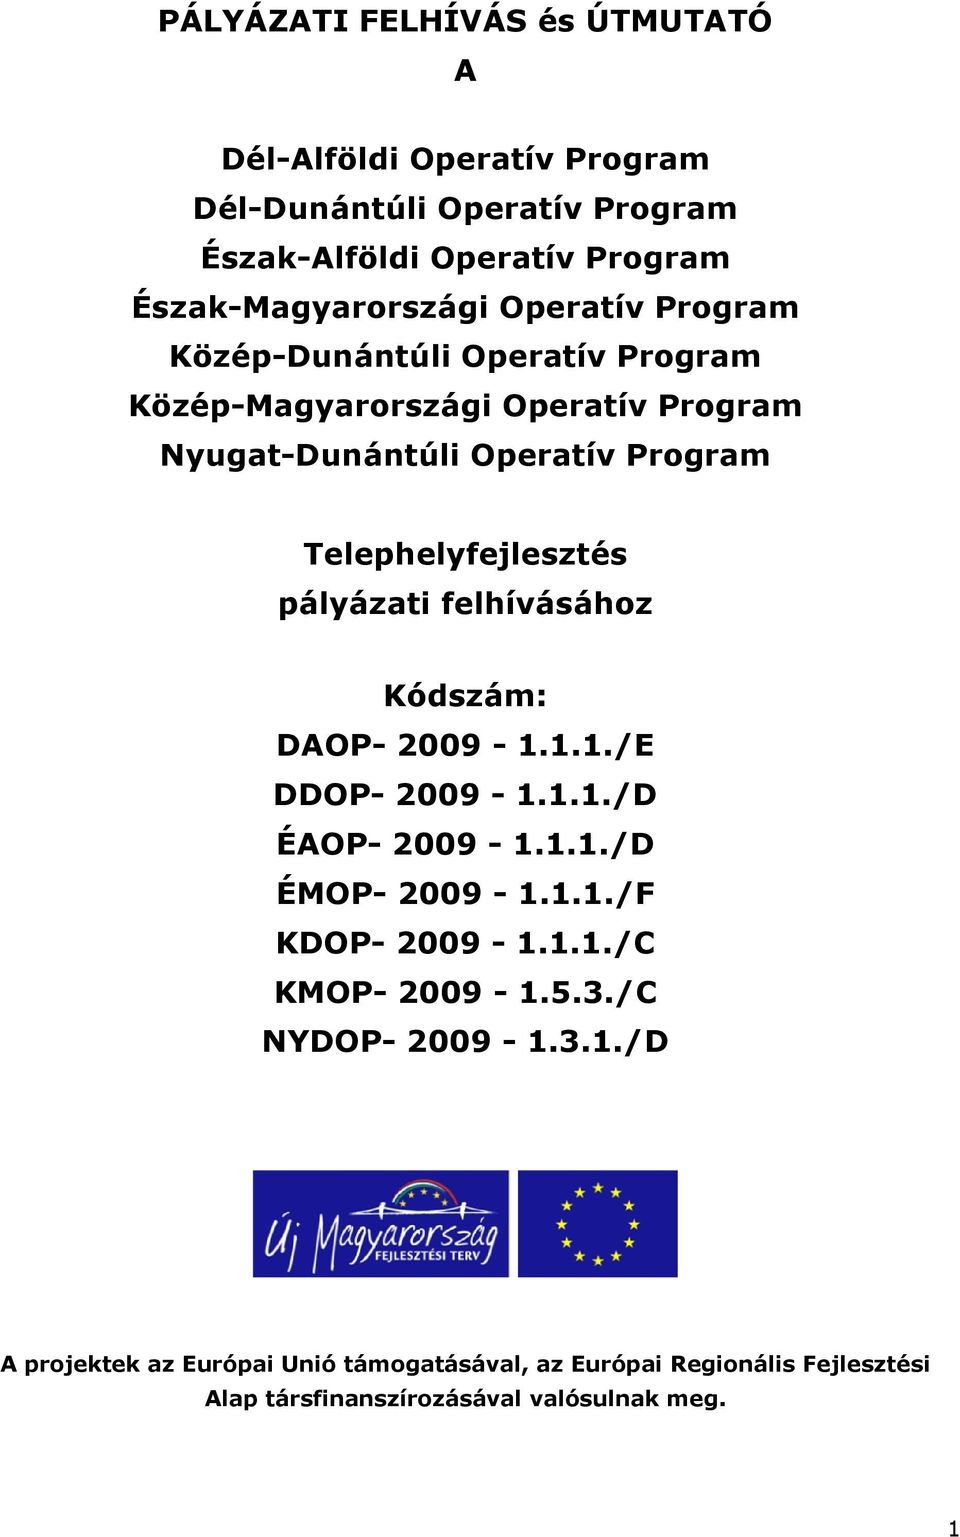 pályázati felhívásához Kódszám: DAOP- 2009-1.1.1./E DDOP- 2009-1.1.1./D ÉAOP- 2009-1.1.1./D ÉMOP- 2009-1.1.1./F KDOP- 2009-1.1.1./C KMOP- 2009-1.